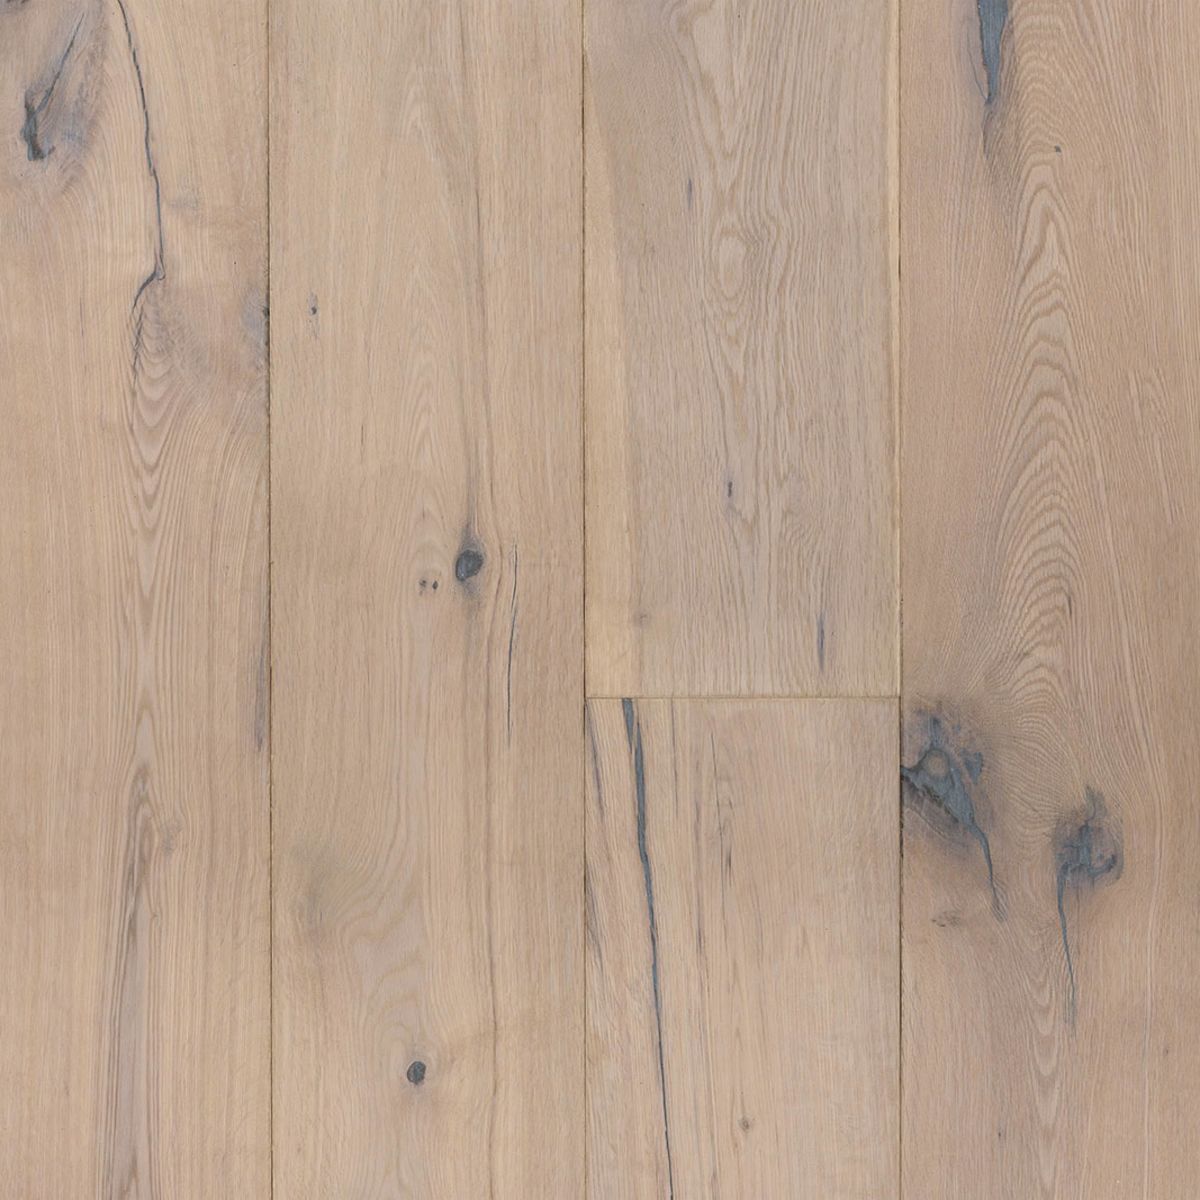 Hardwood | Duchateau White Oiled | Flooring Liquidators